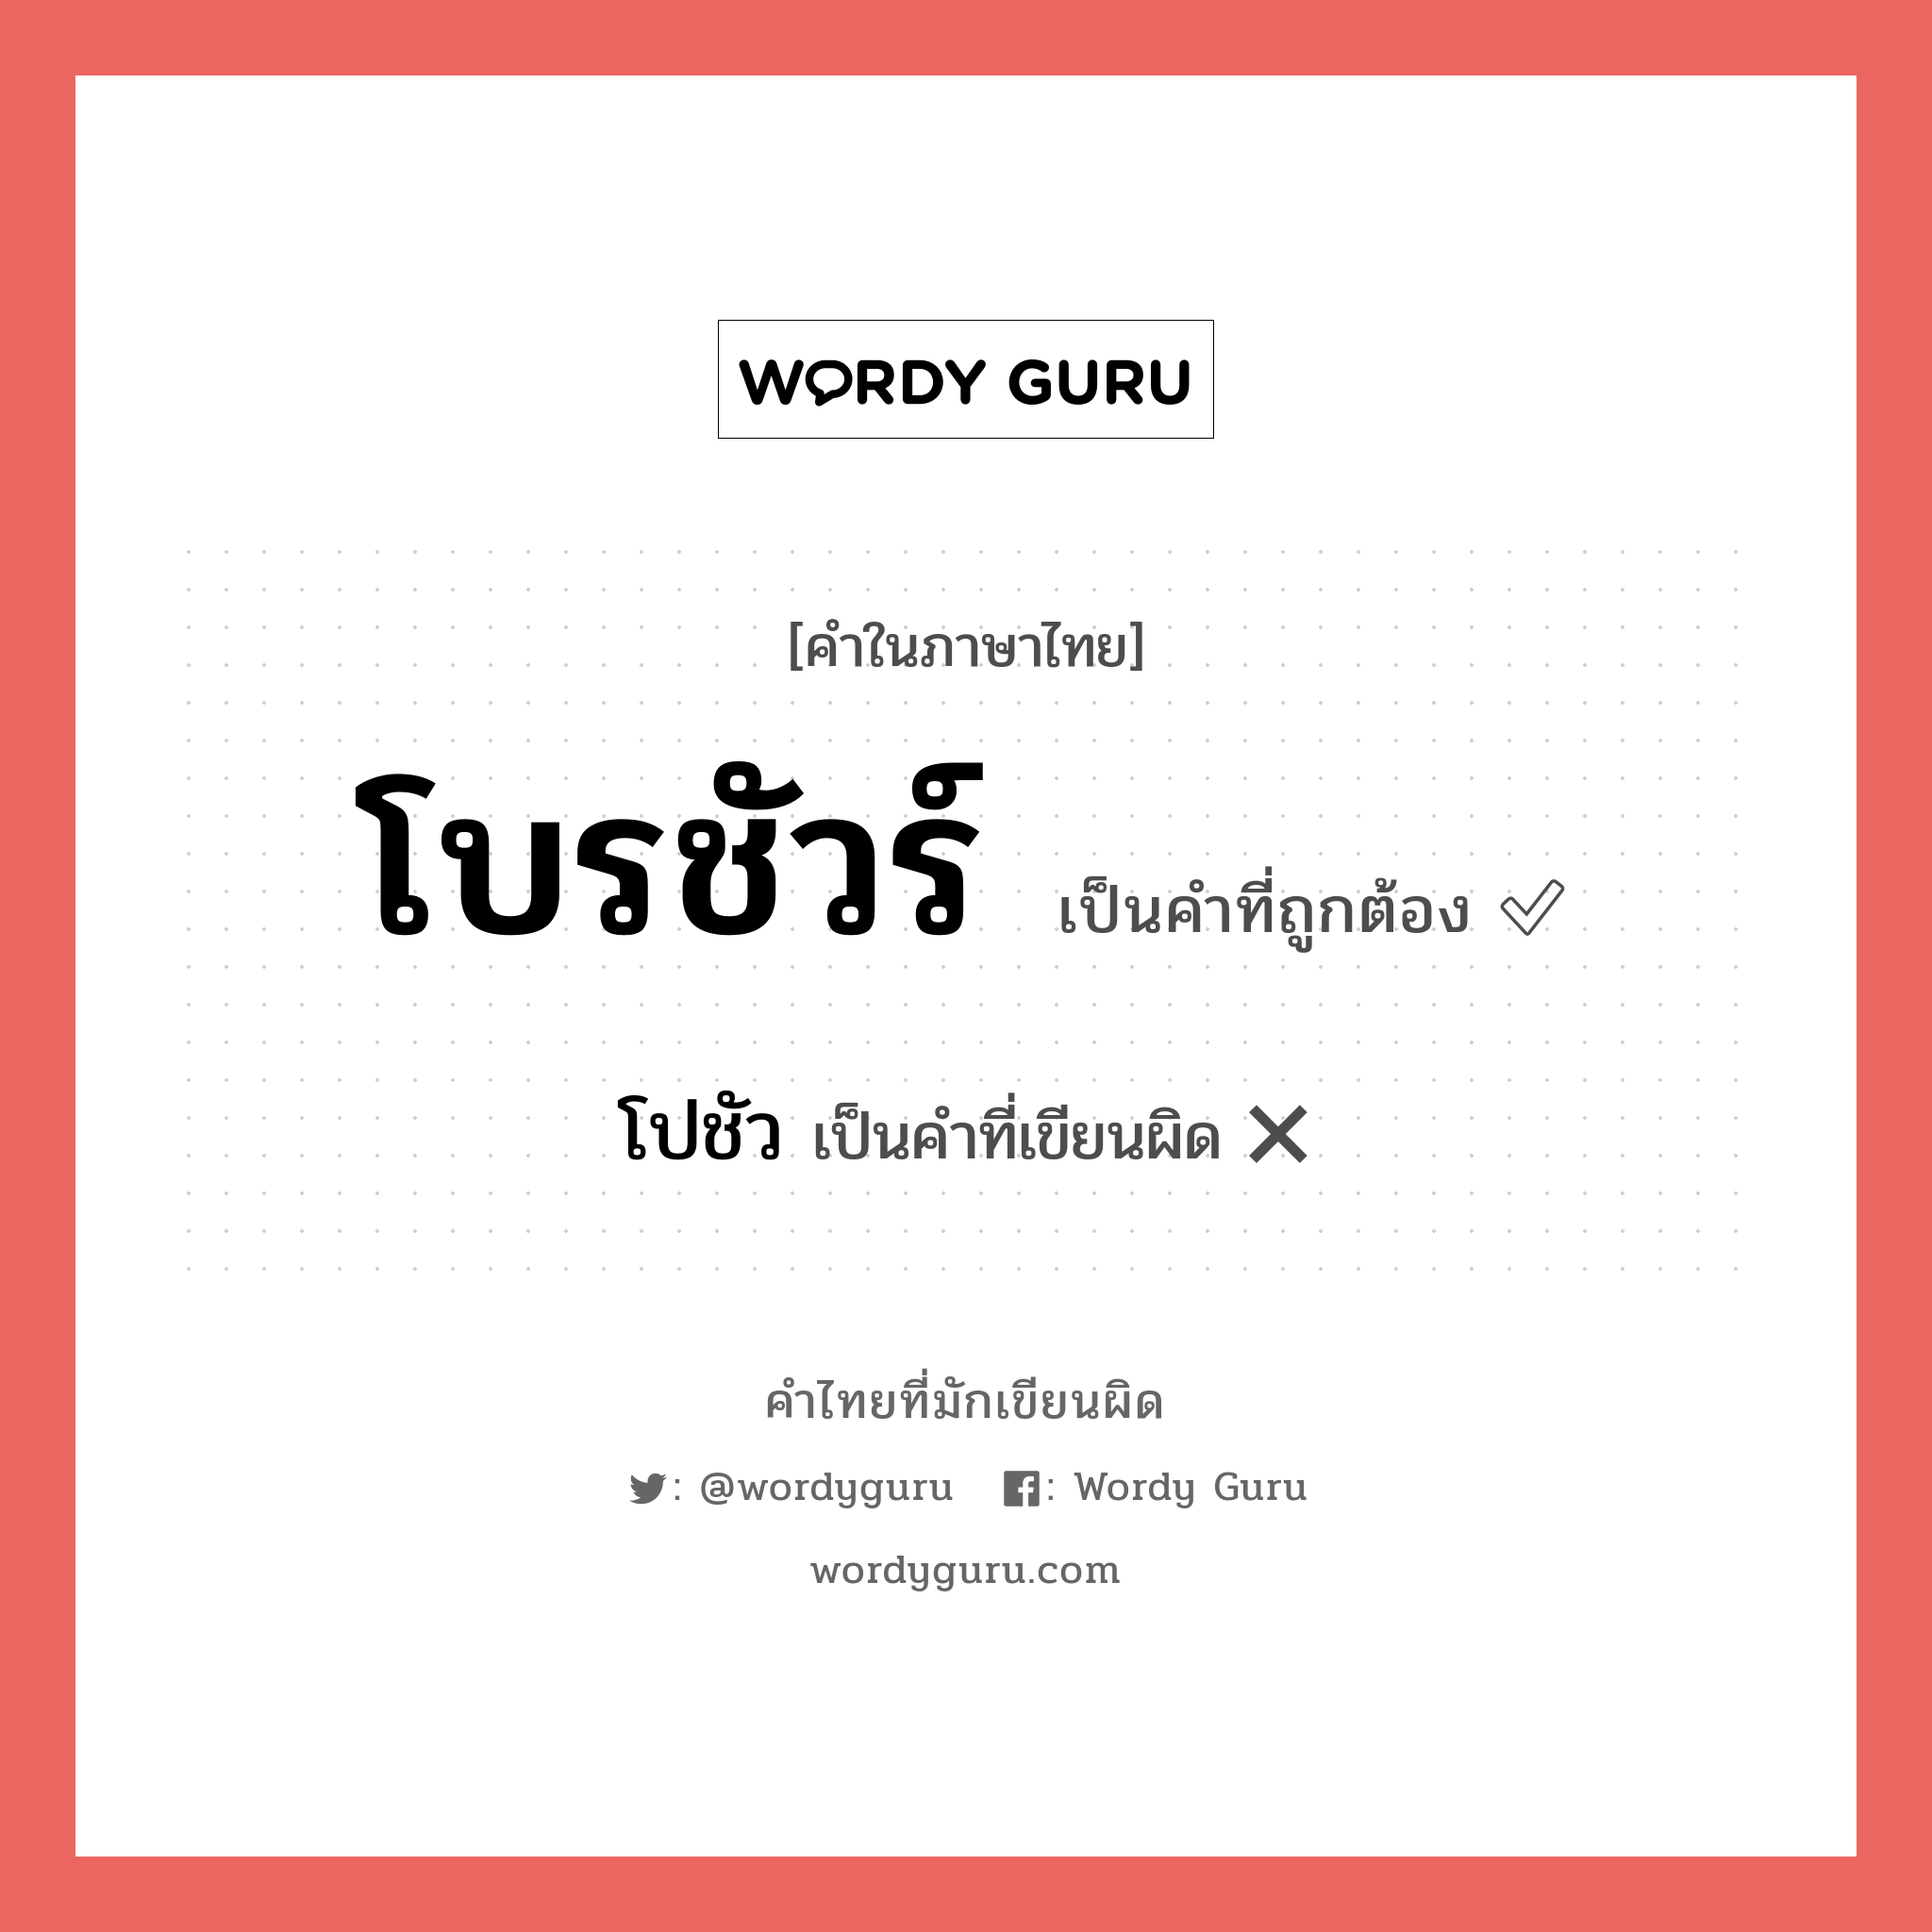 โปชัว หรือ โบรชัวร์ คำไหนเขียนถูก?, คำในภาษาไทยที่มักเขียนผิด โปชัว คำที่ผิด ❌ โบรชัวร์